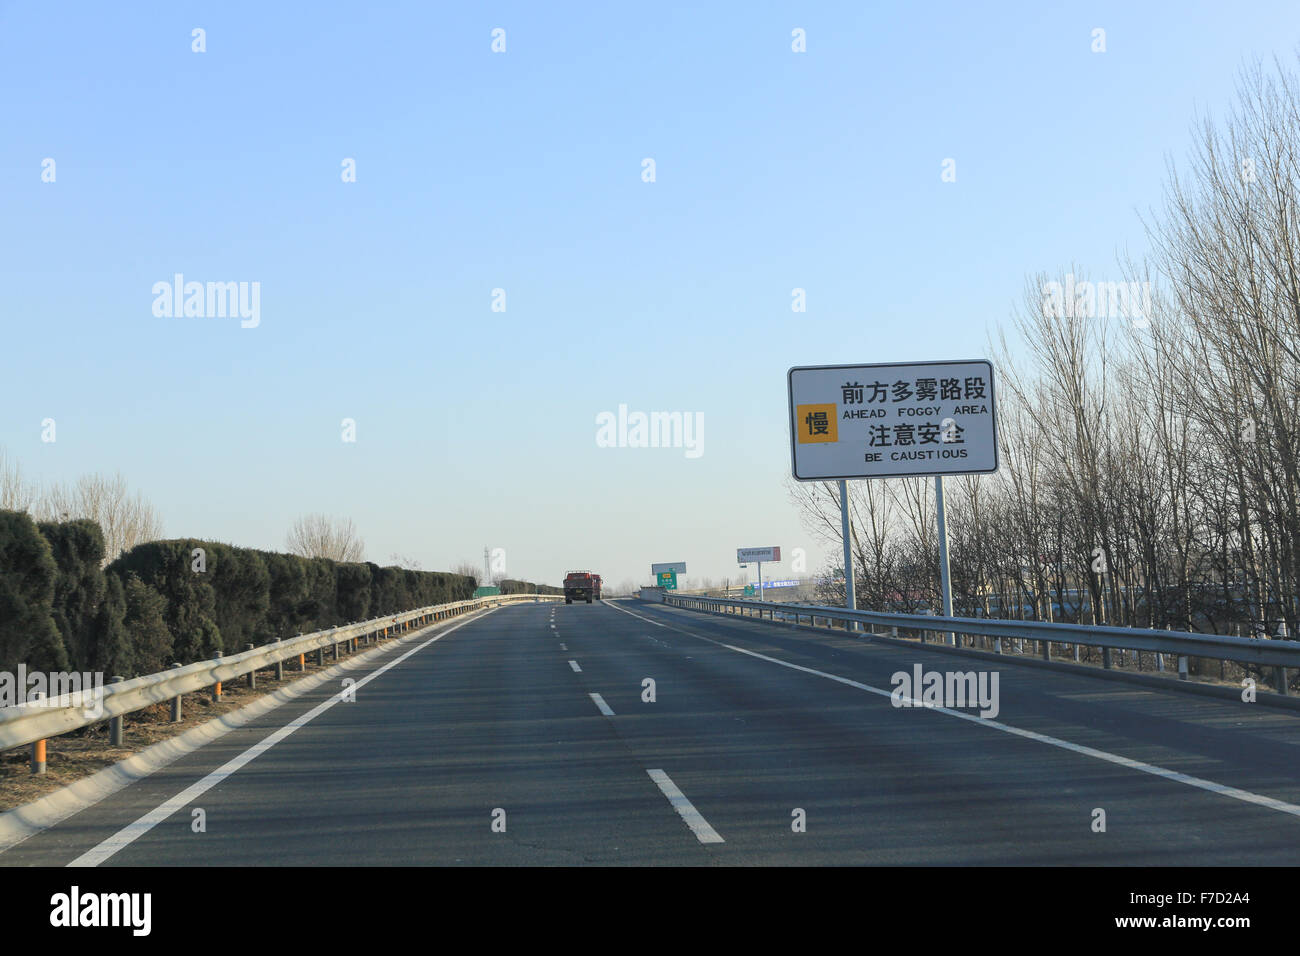 Panneau routier chinois : devant être Caustious - Zone de brouillard. Autoroute Jinji est dirigé vers le sud en direction de Tianjin. Banque D'Images